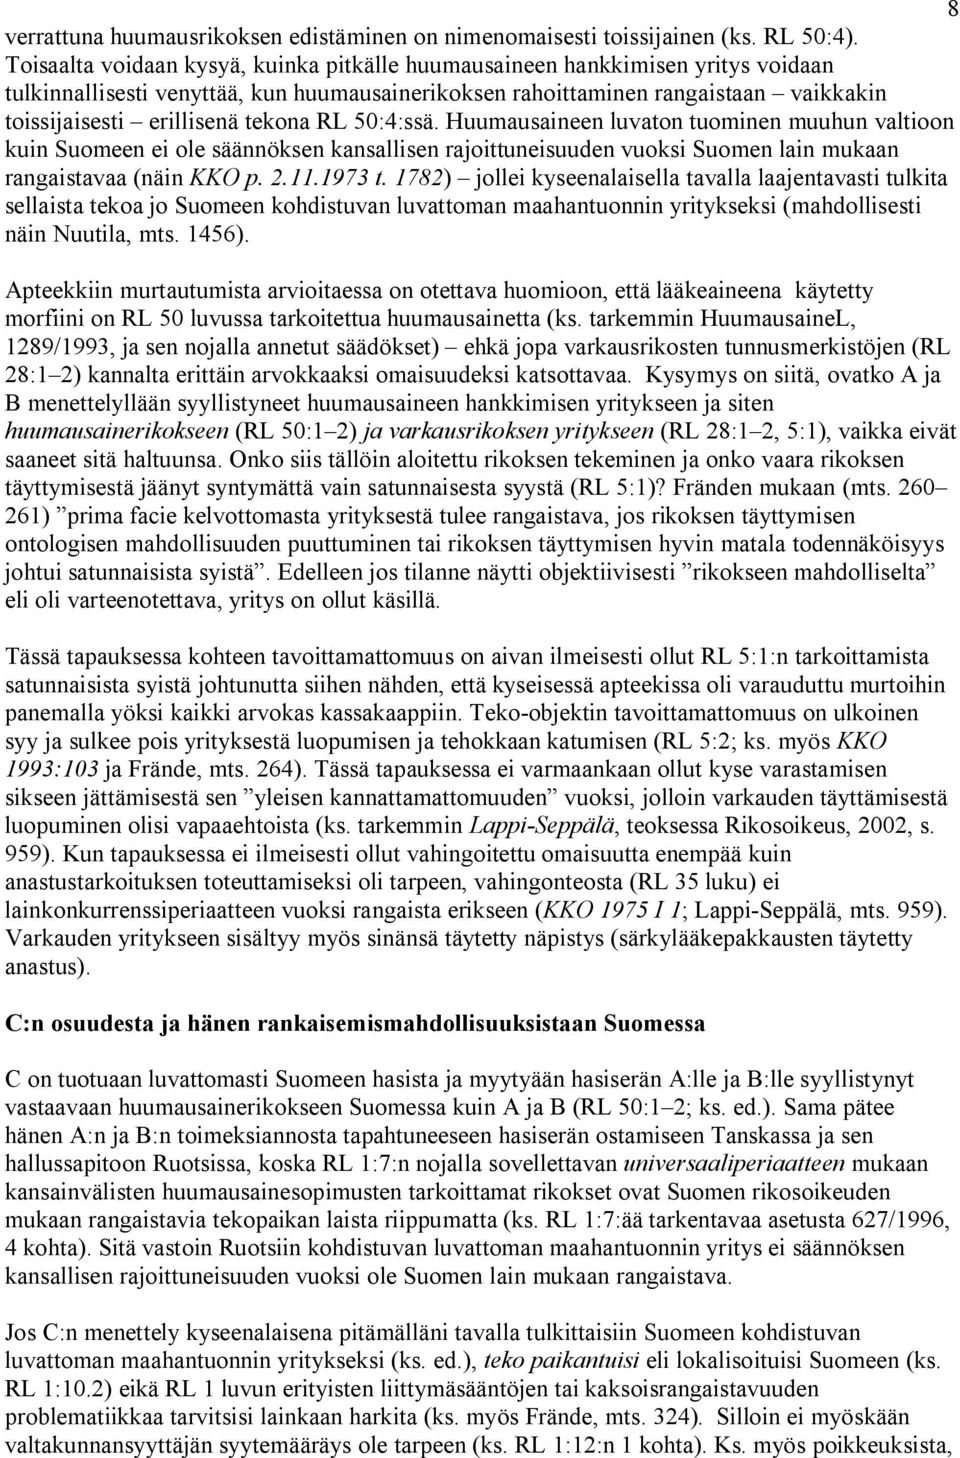 tekona RL 50:4:ssä. Huumausaineen luvaton tuominen muuhun valtioon kuin Suomeen ei ole säännöksen kansallisen rajoittuneisuuden vuoksi Suomen lain mukaan rangaistavaa (näin KKO p. 2.11.1973 t.